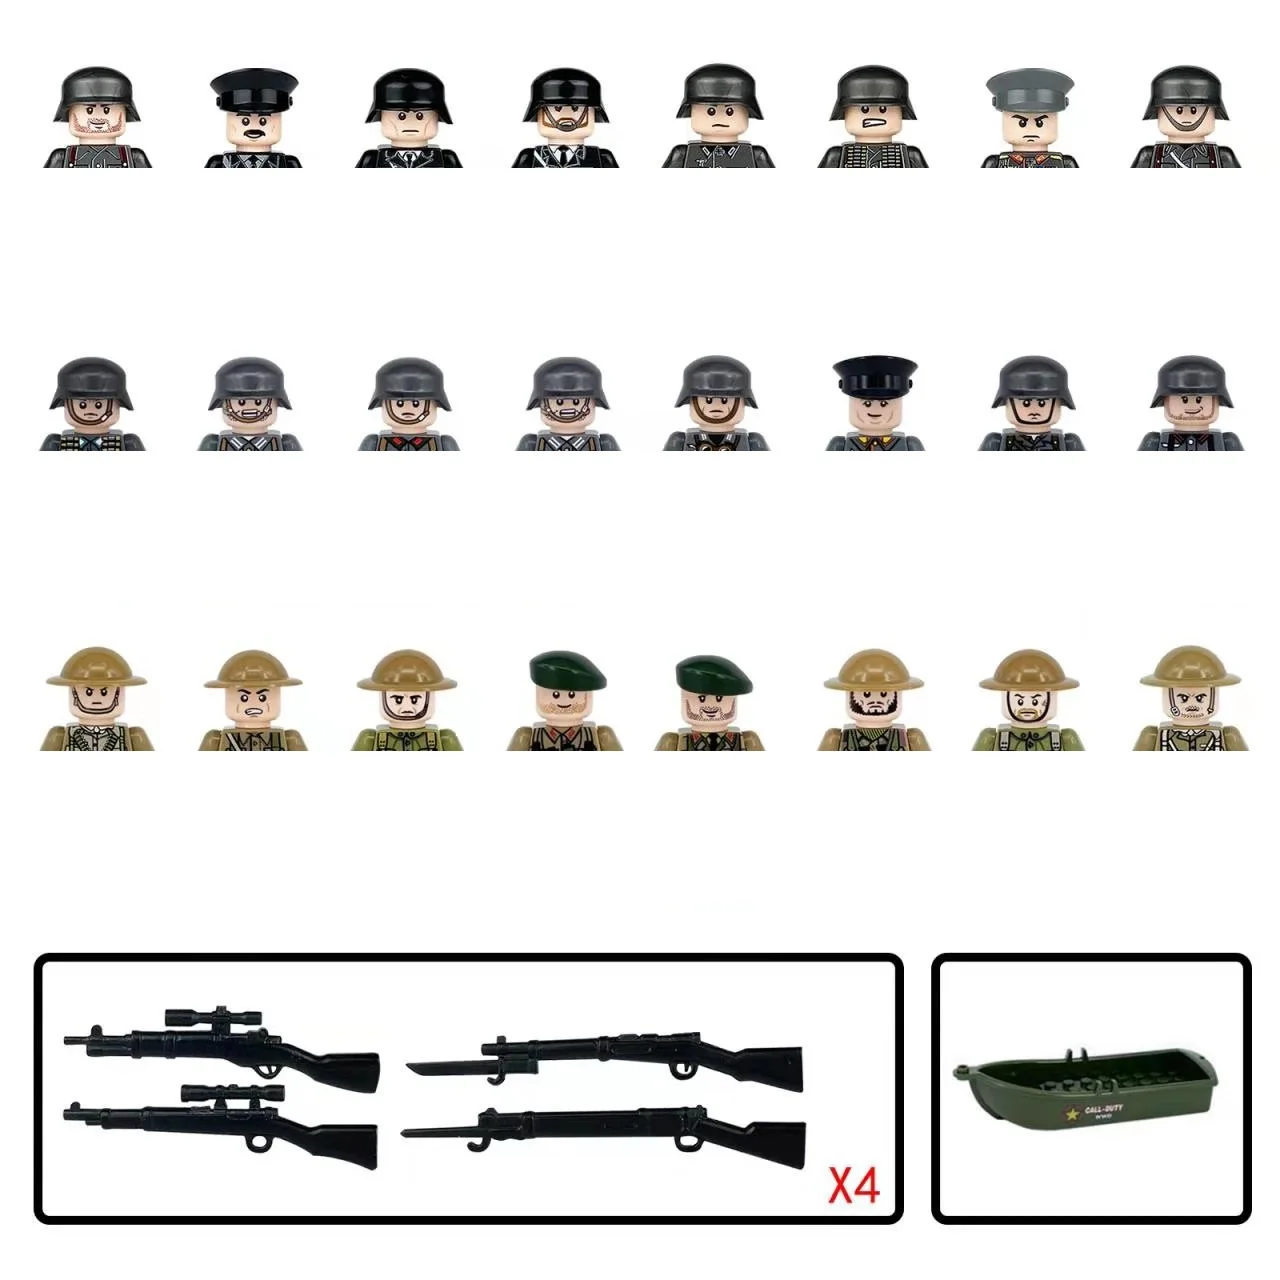 

Военная 2 мировая война Германия британская армия пехота солдаты Оружие Винтовка пистолеты MOC строительные блоки аксессуары фигурки мини-игрушки